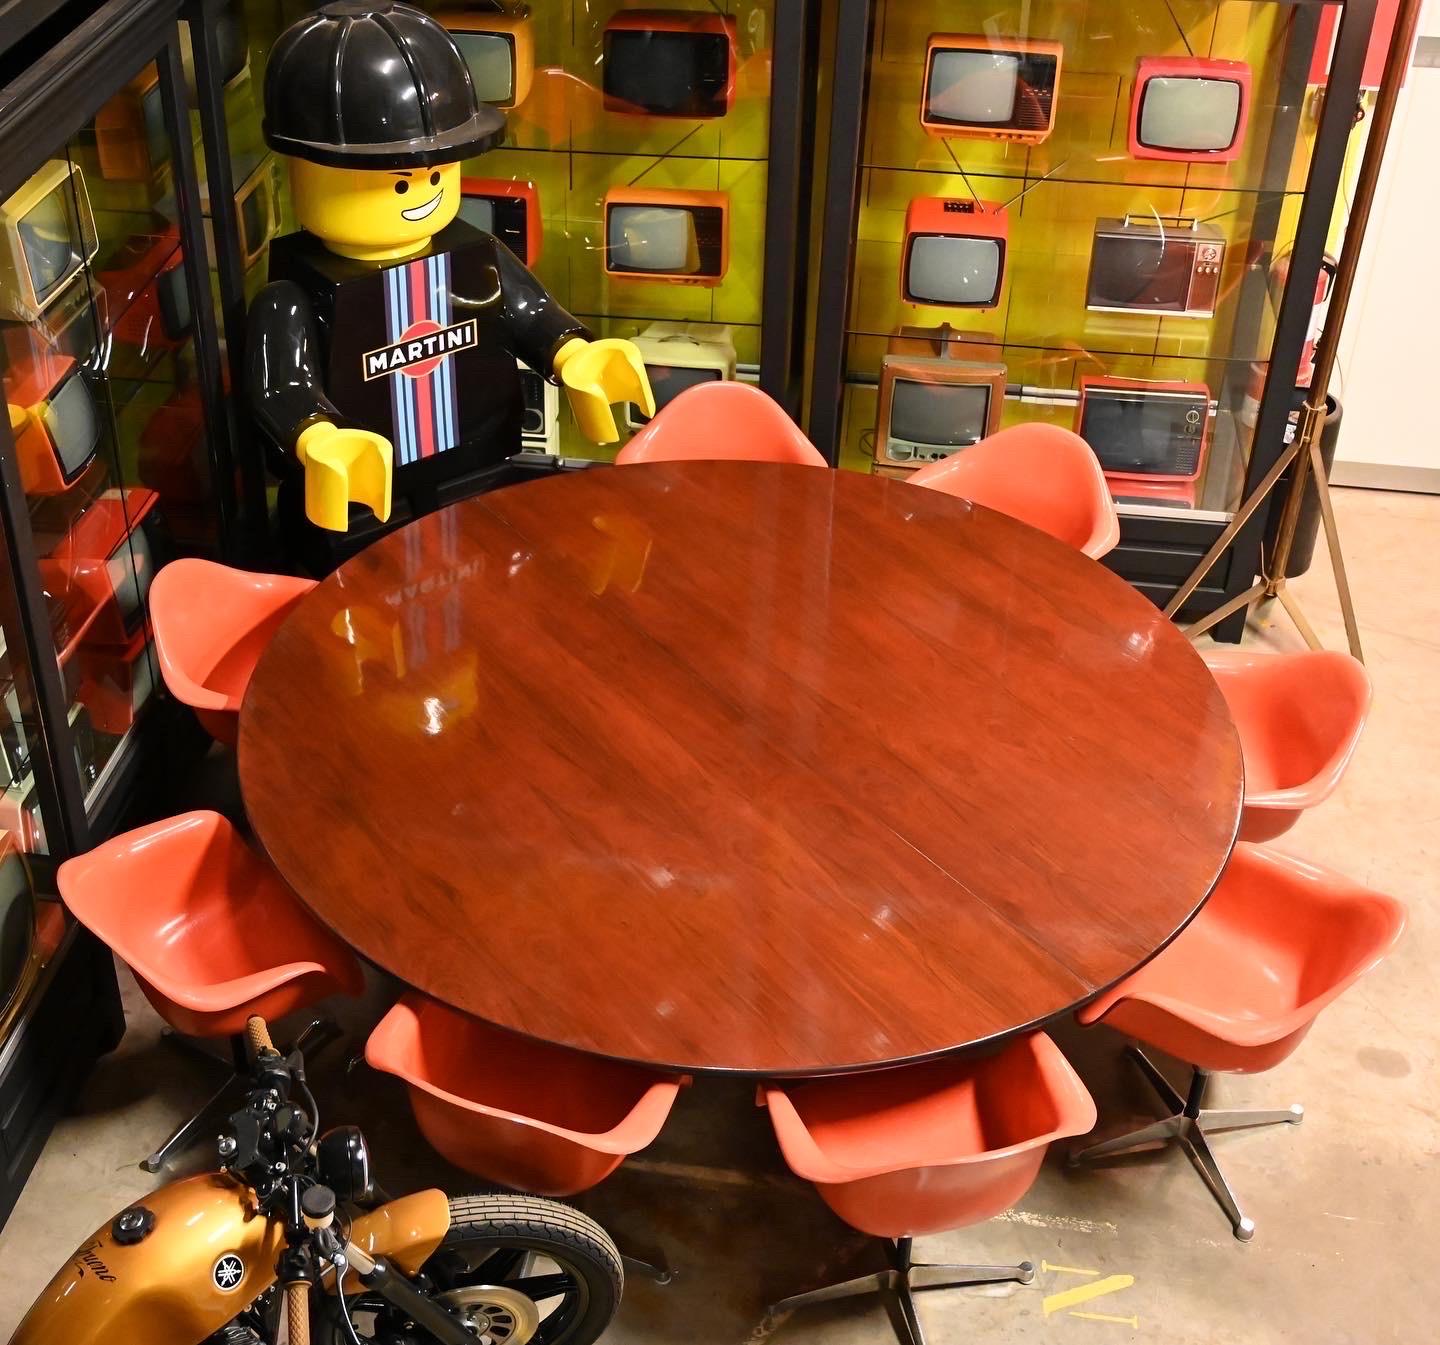 Voici la chaise Charles Eames by Herman Miller Orange Fiberglass Shell Chair, une pièce intemporelle de l'histoire du design. Nous avons le plaisir de proposer un ensemble de huit de ces chaises emblématiques, disponibles à l'achat en tant